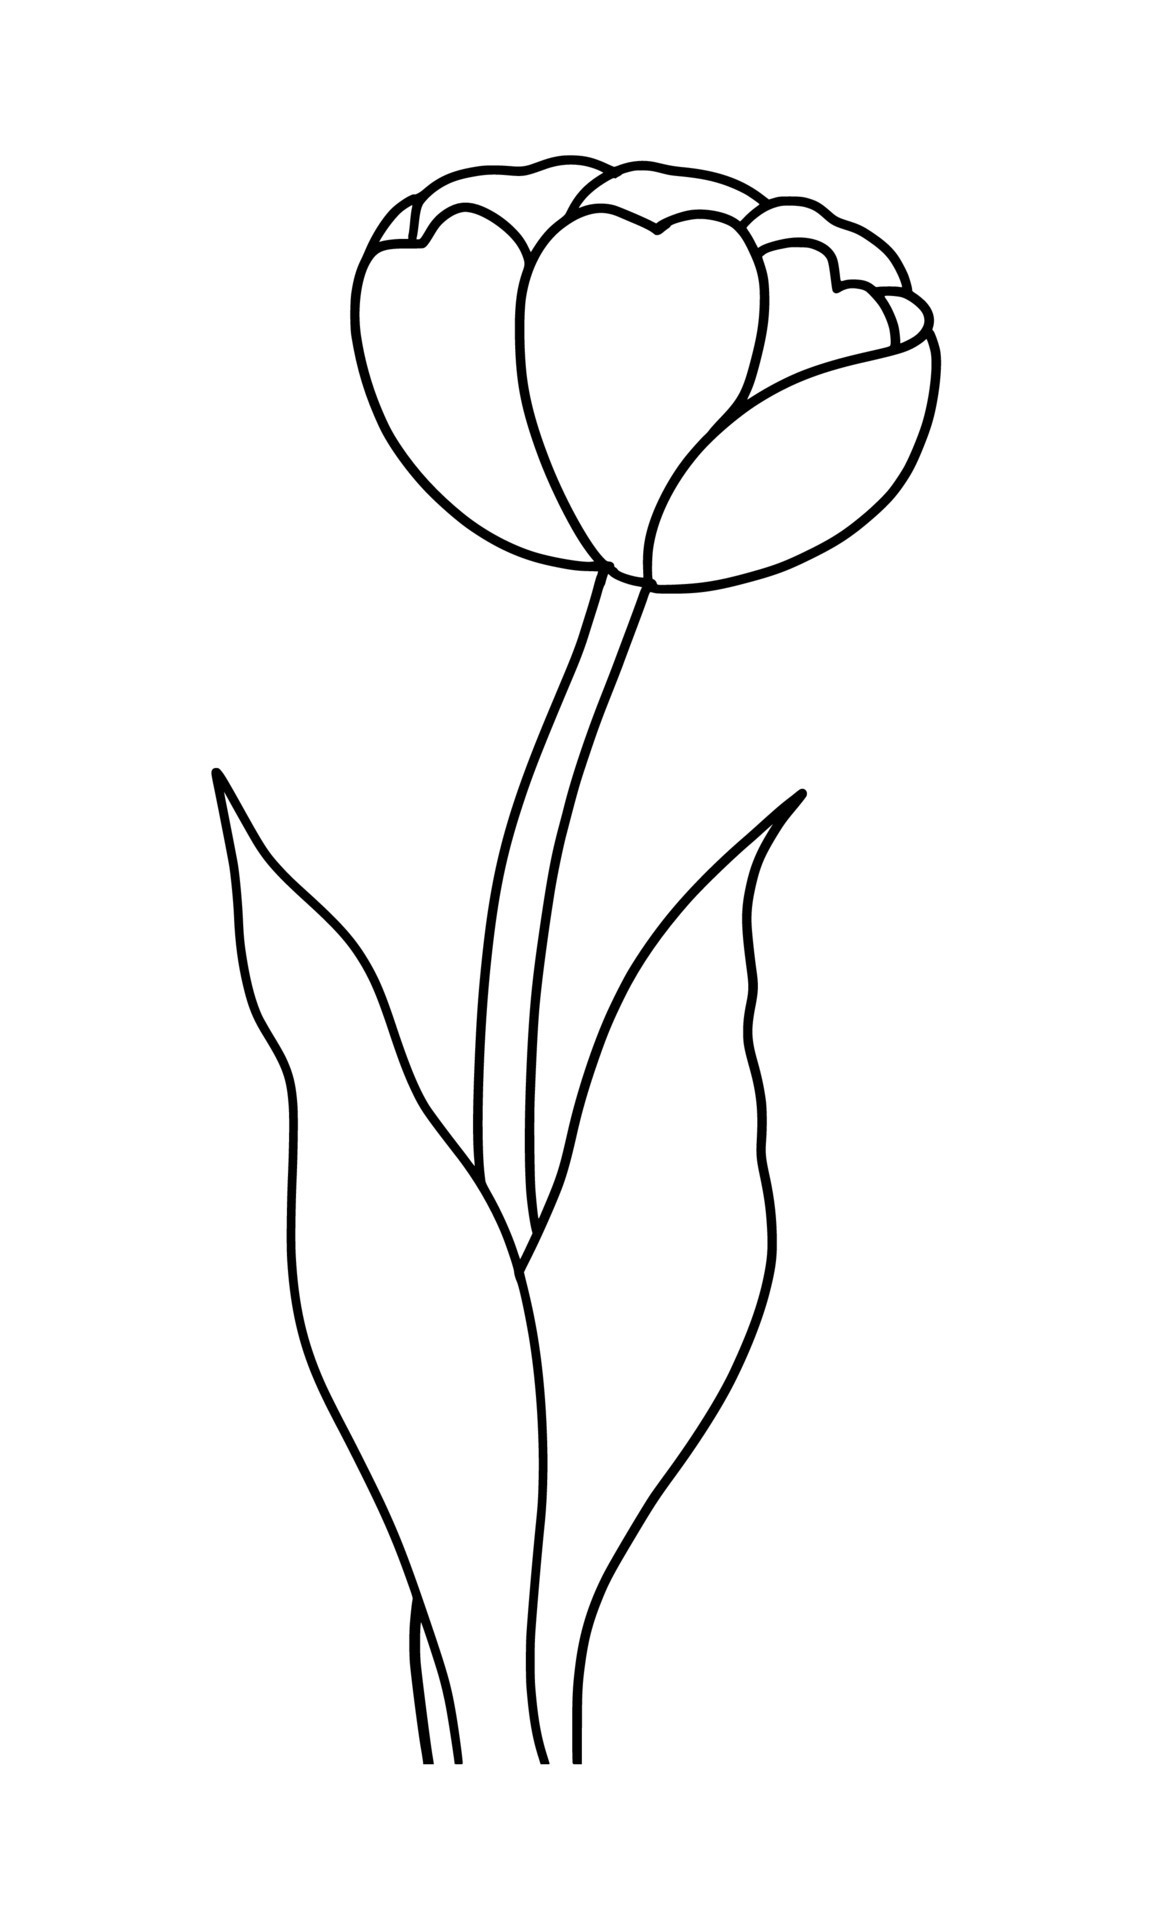 Outline tulip flower isolated on white background 22662289 Vector Art ...